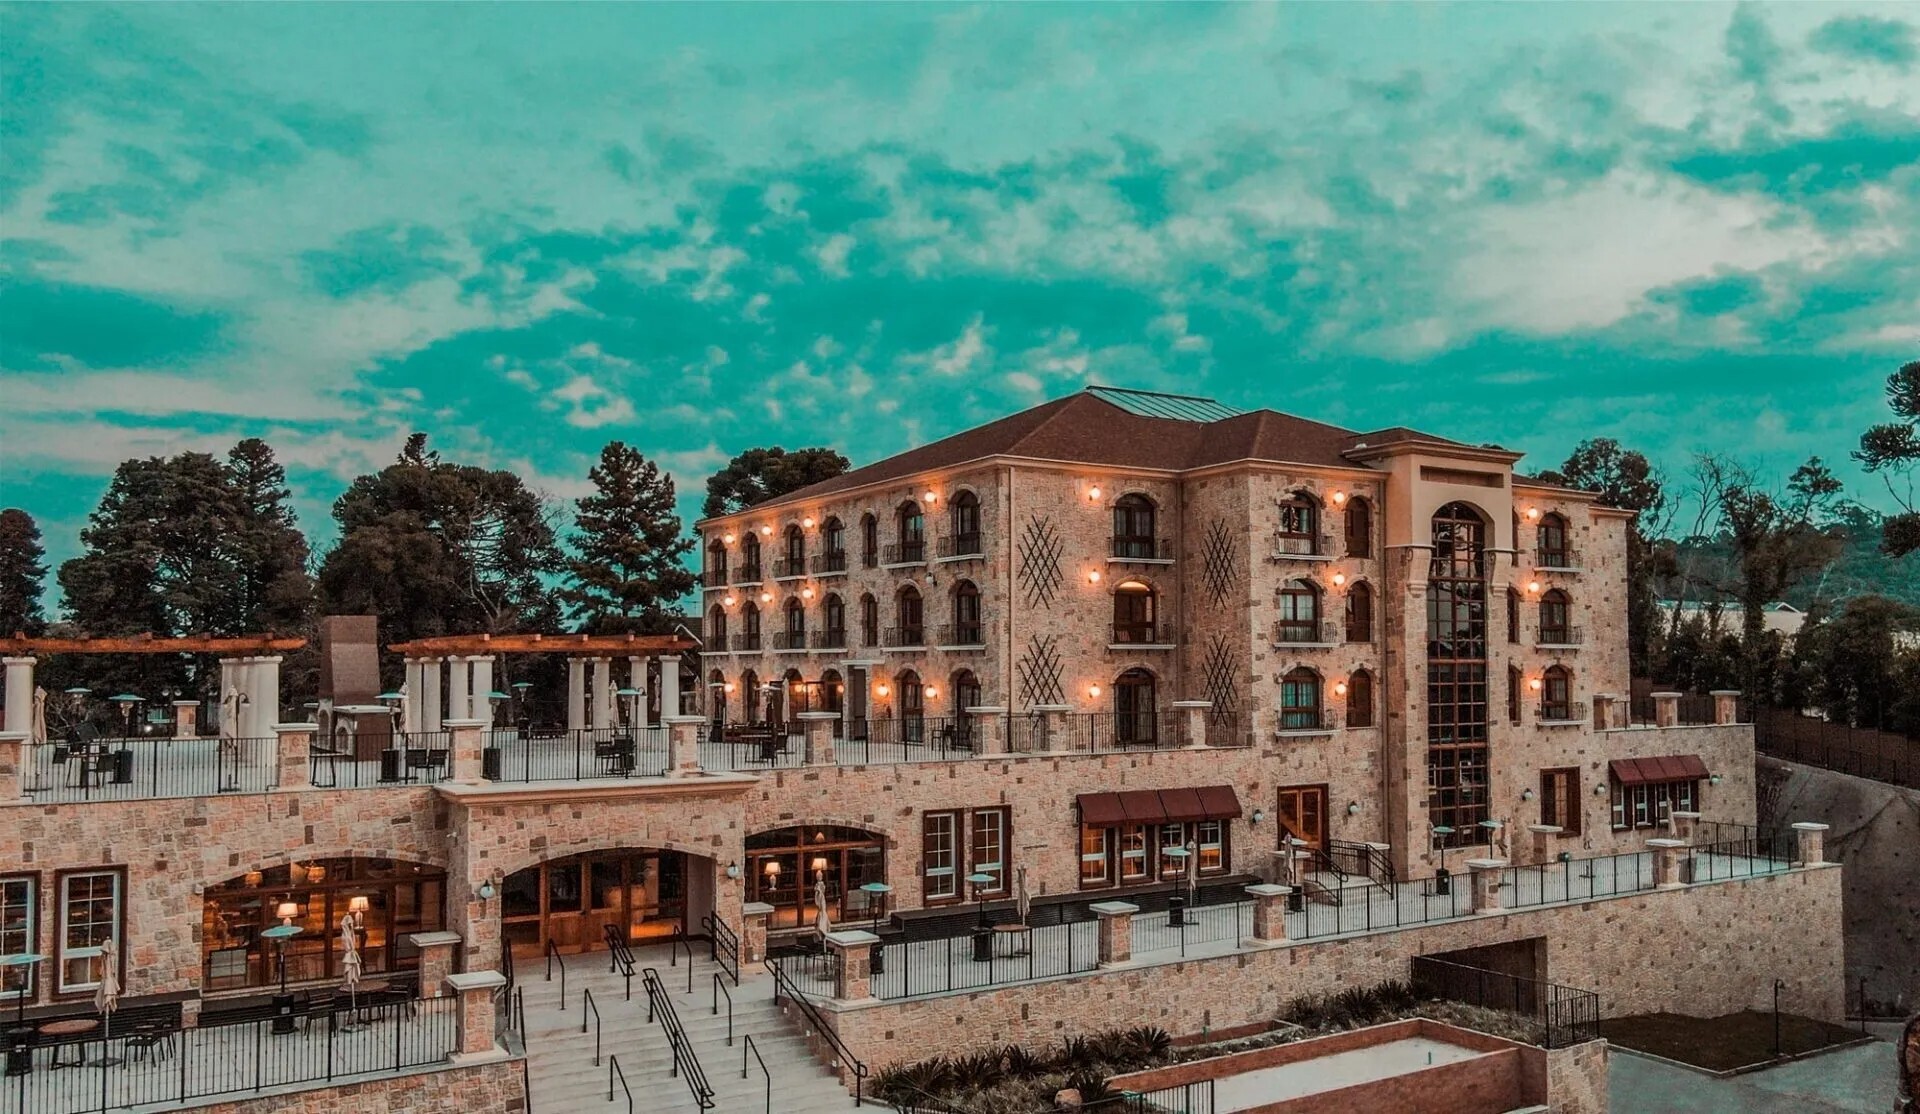 Vista panorâmica do resort Buona Vitta, em Gramado (RS), com sua arquitetura inspirada na região italiana da Toscana